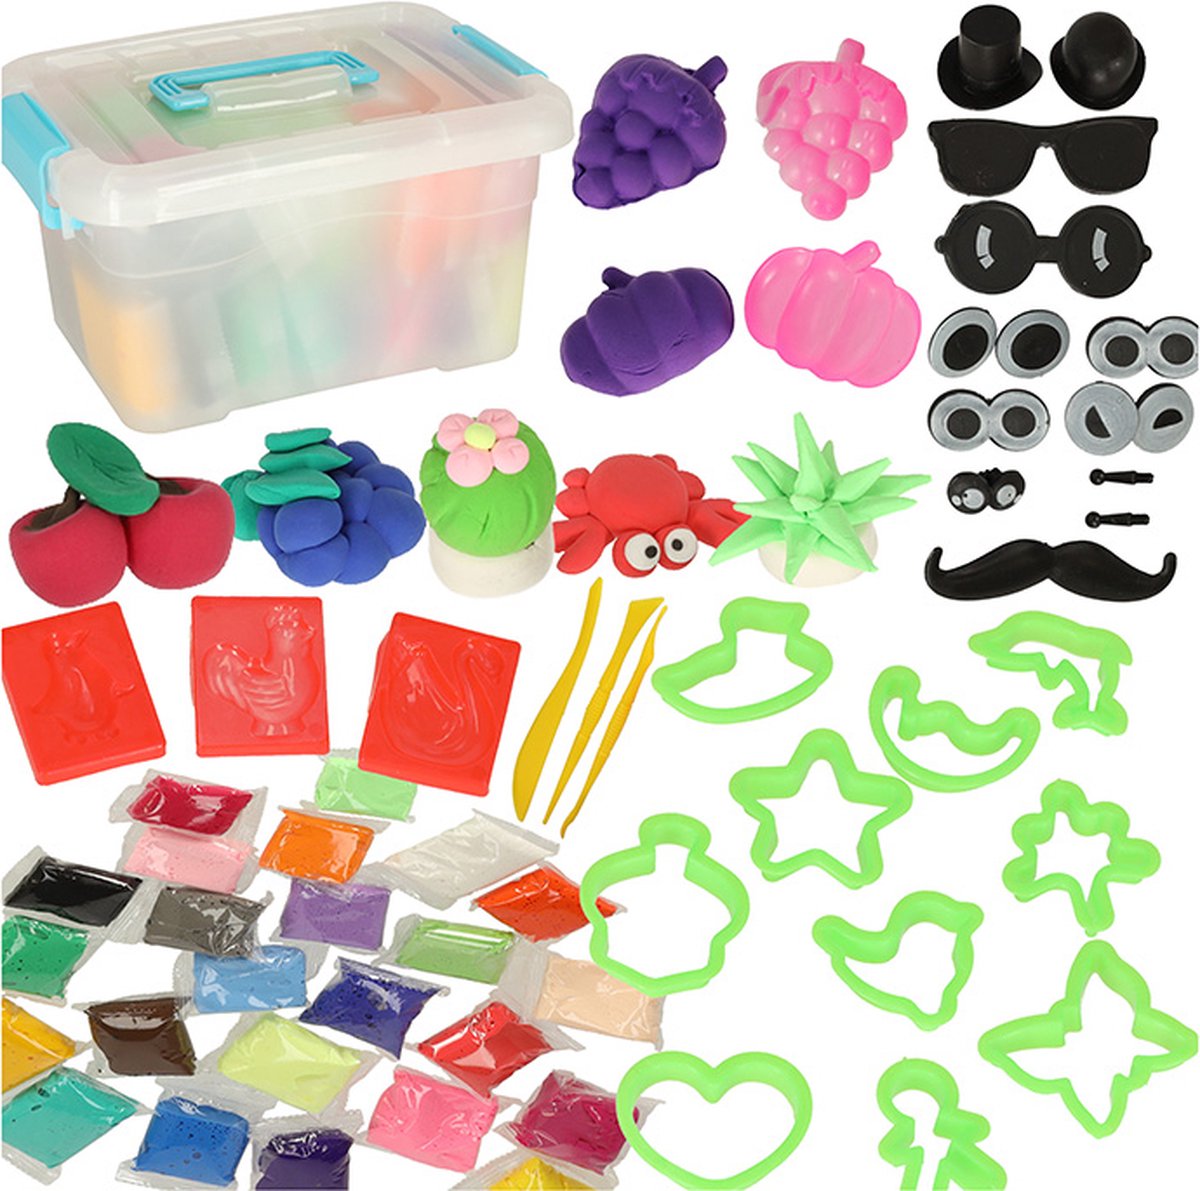 Playos® - Polymeer Klei - 24 Kleuren - Starters Kit - met Gereedschap en Accessoires - in Opbergdoos - Boetseerklei - Afbak Klei - Boetseren - Kinderen en Volwassenen - Polymer Clay - Magisch klei - Speelset - Hobbypakket - Playos